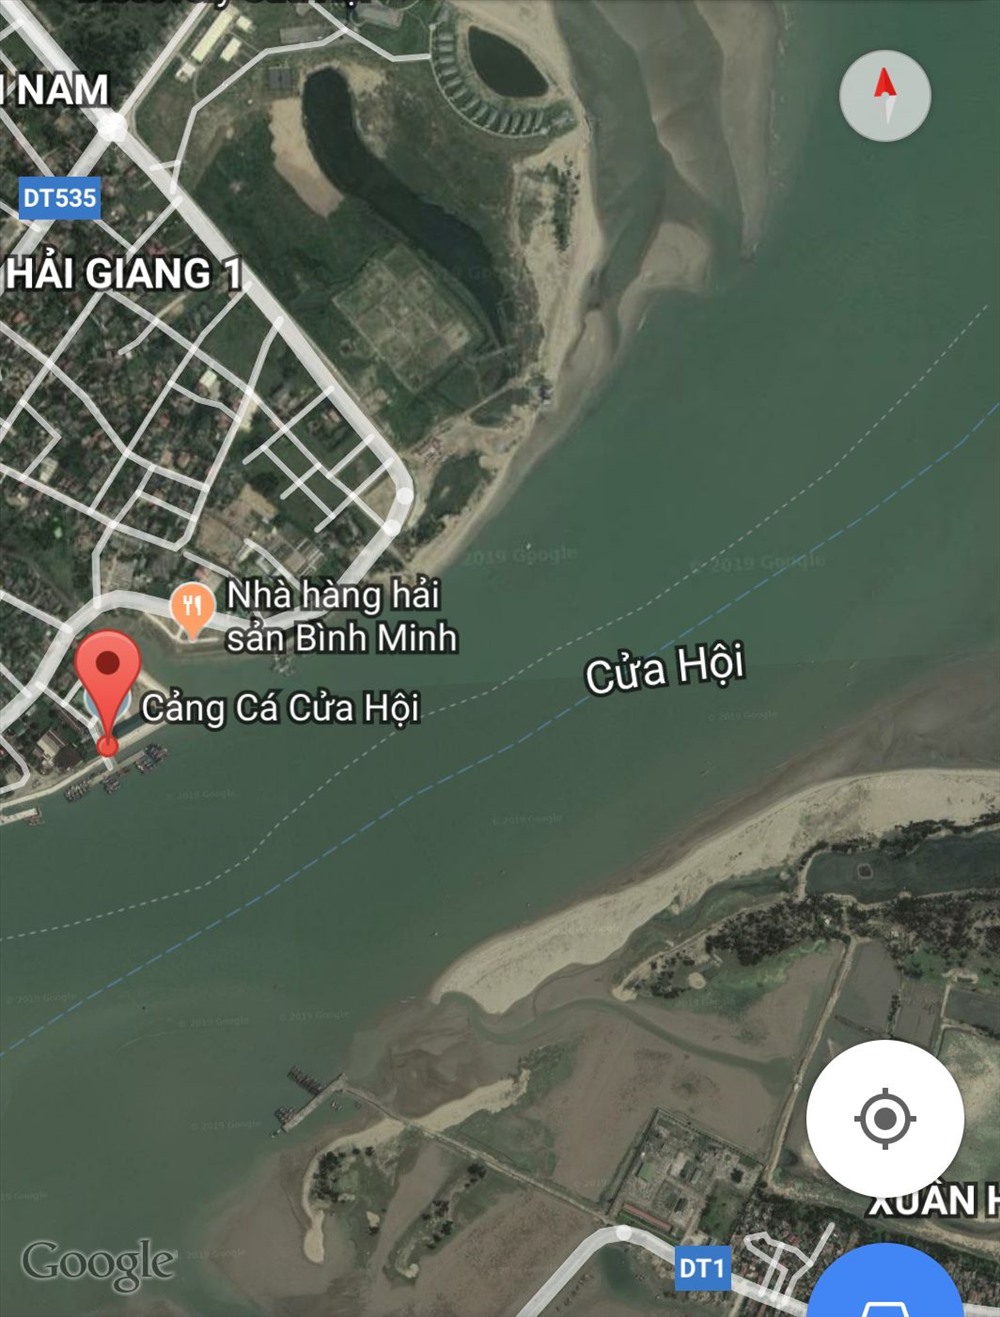 Cảng cửa Hội gần khu vực xẩy ra sự cố - Ảnh: Google